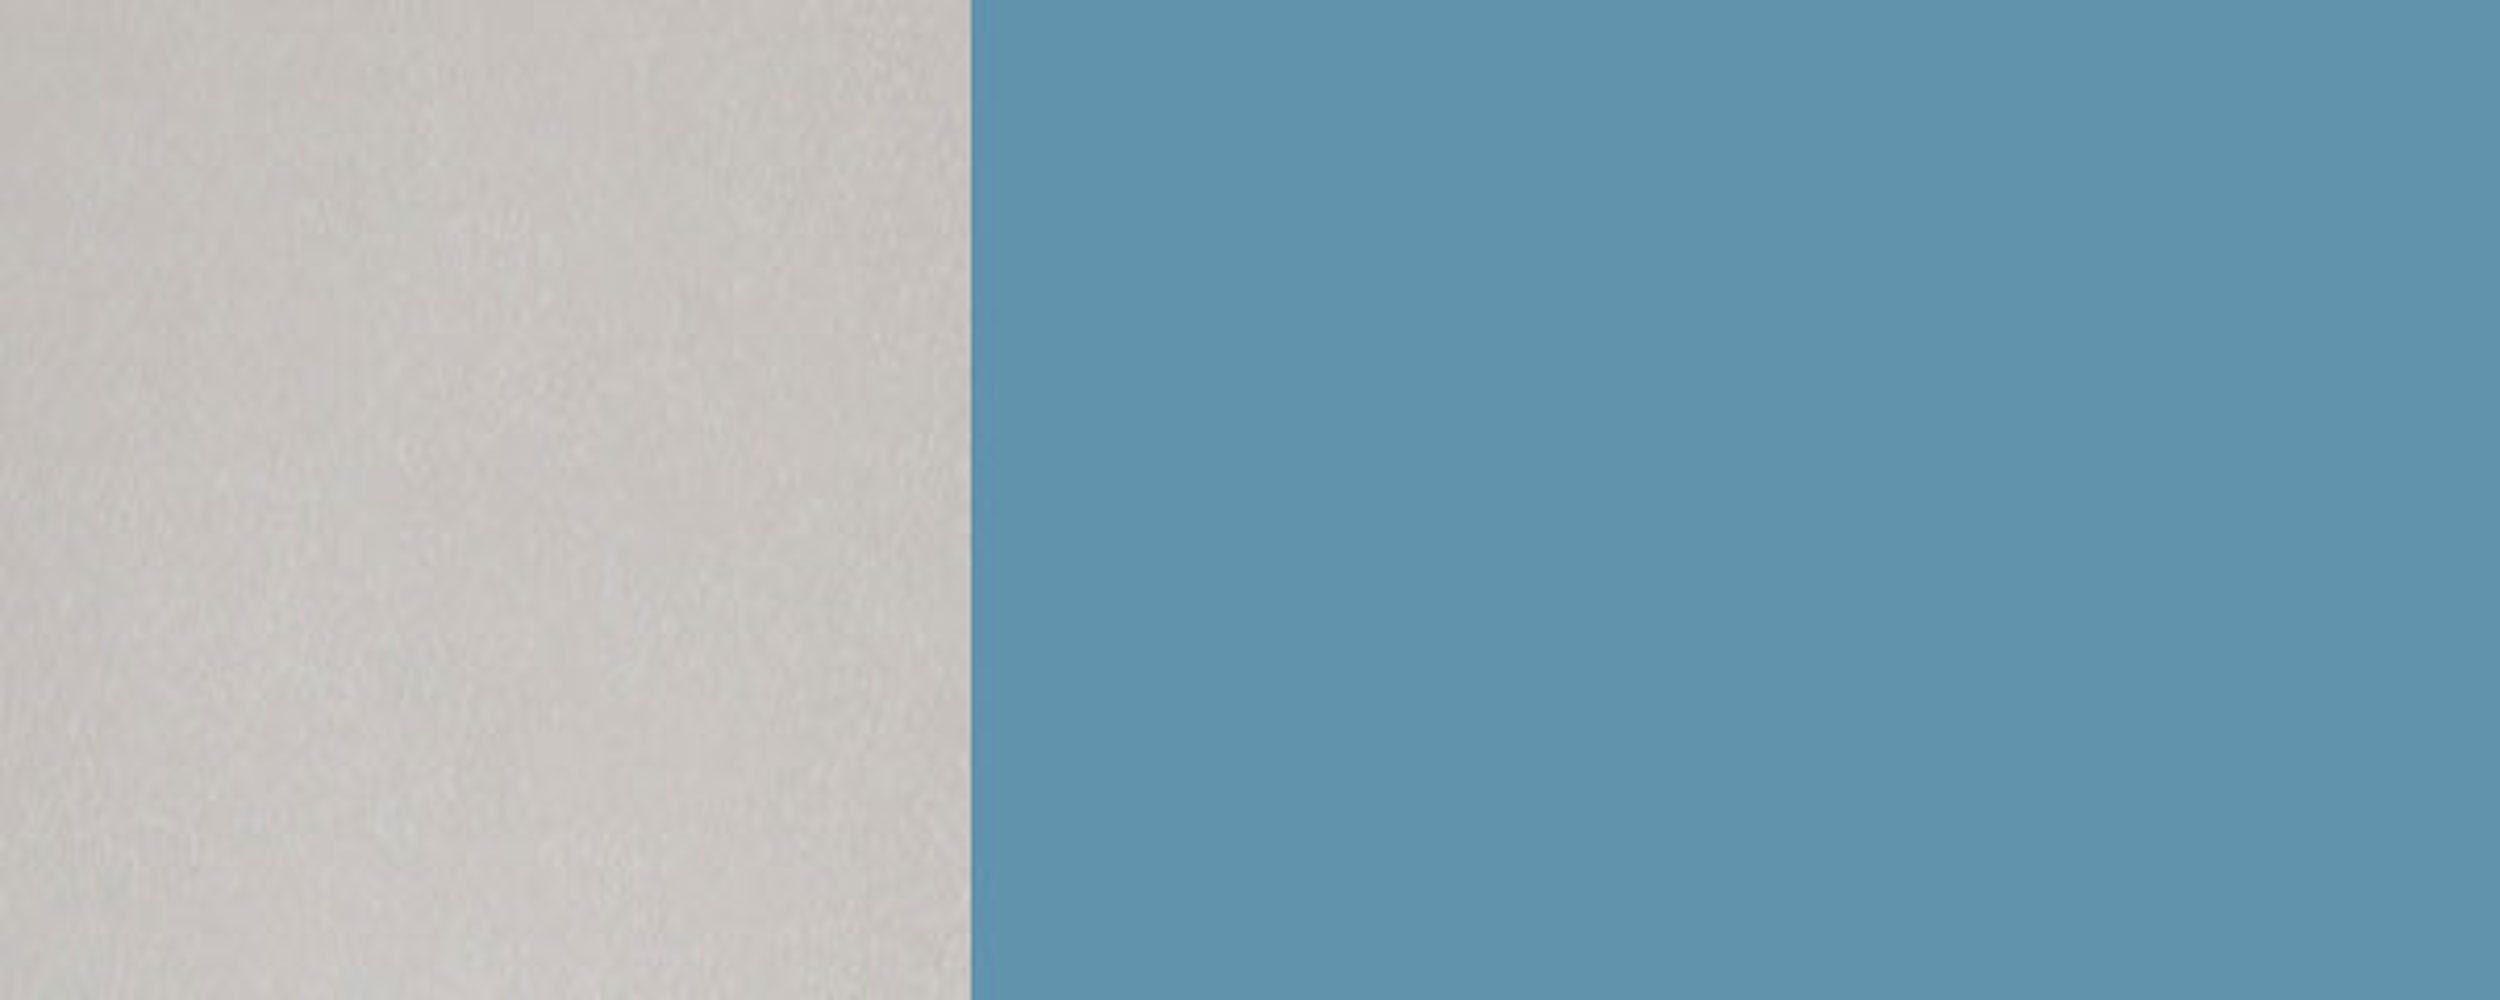 90cm (Rimini) Front- 5024 Korpusfarbe mit Glaseinsatz pastellblau 2-türig Feldmann-Wohnen Rimini wählbar RAL und matt Klapphängeschrank